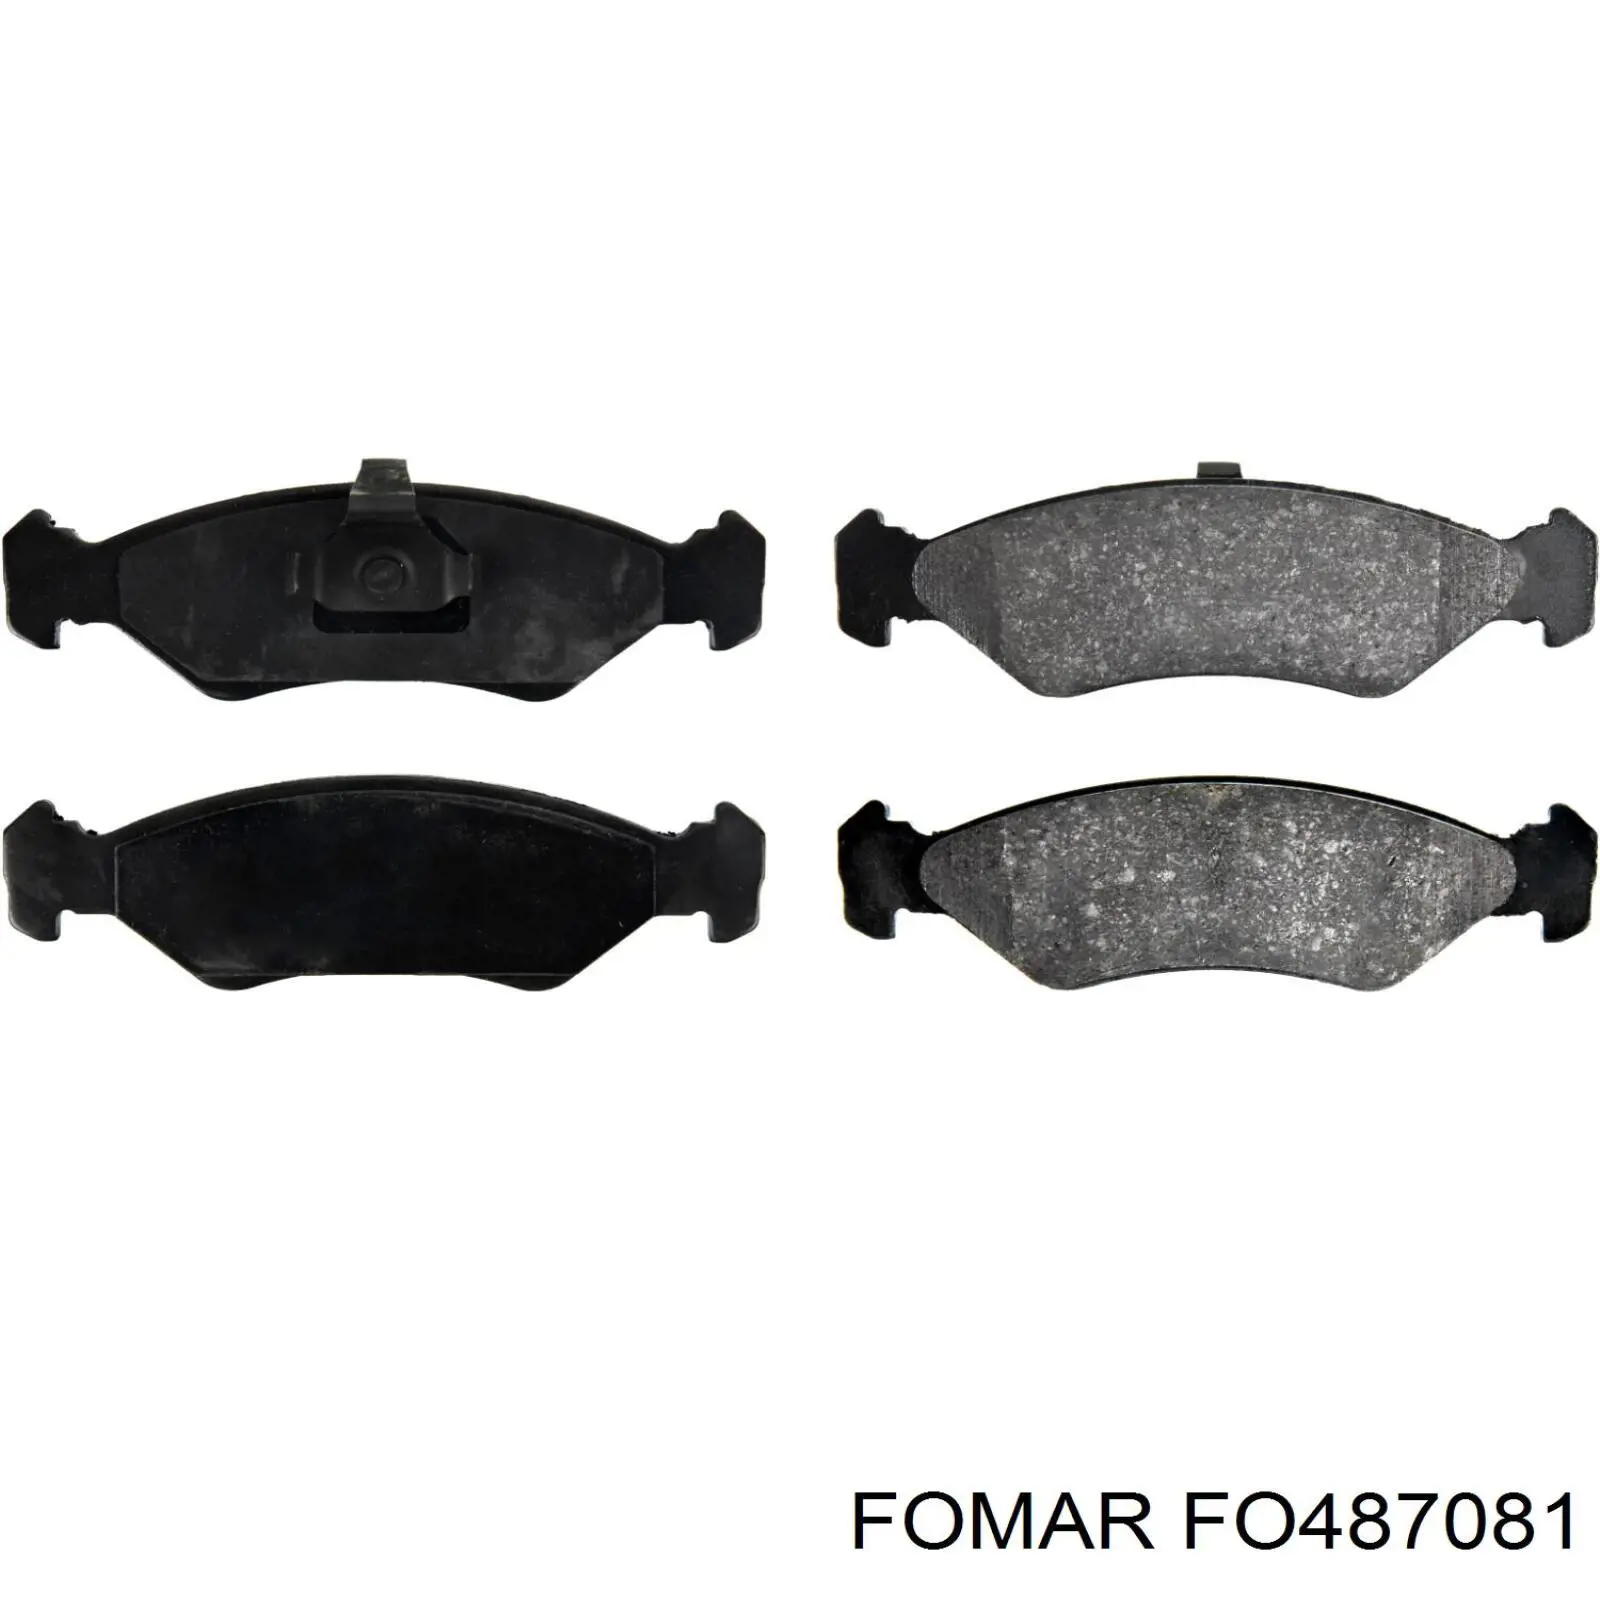 FO 487081 Fomar Roulunds передние тормозные колодки